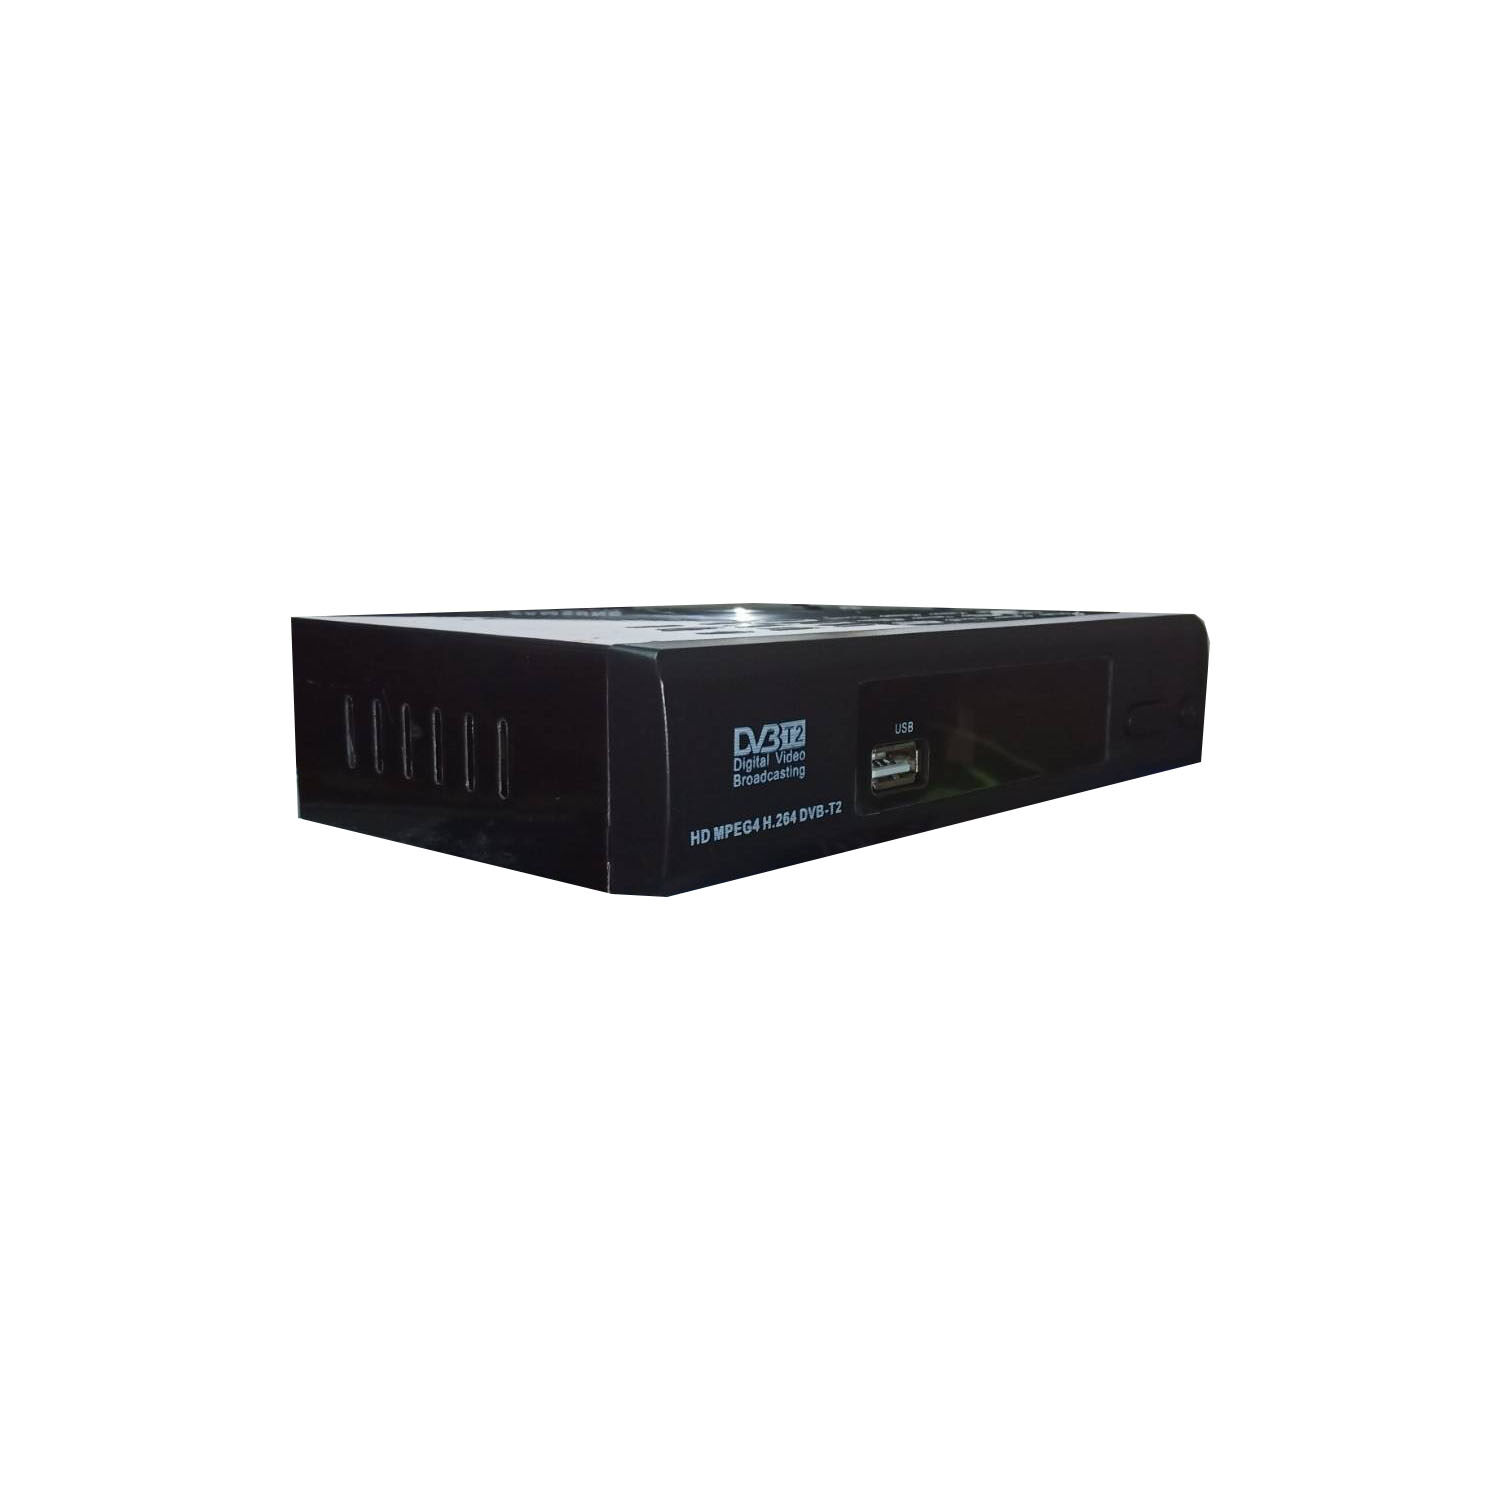 ภาพประกอบของ กล่องดิจิตอลทีวี DigitalTV HDTV HD BOX ใช้ร่วมกับเสาอากาศทีวี คมชัดด้วยระบบดิจิตอล สินค้าคุณภาพ สินค้าพร้อมส่ง